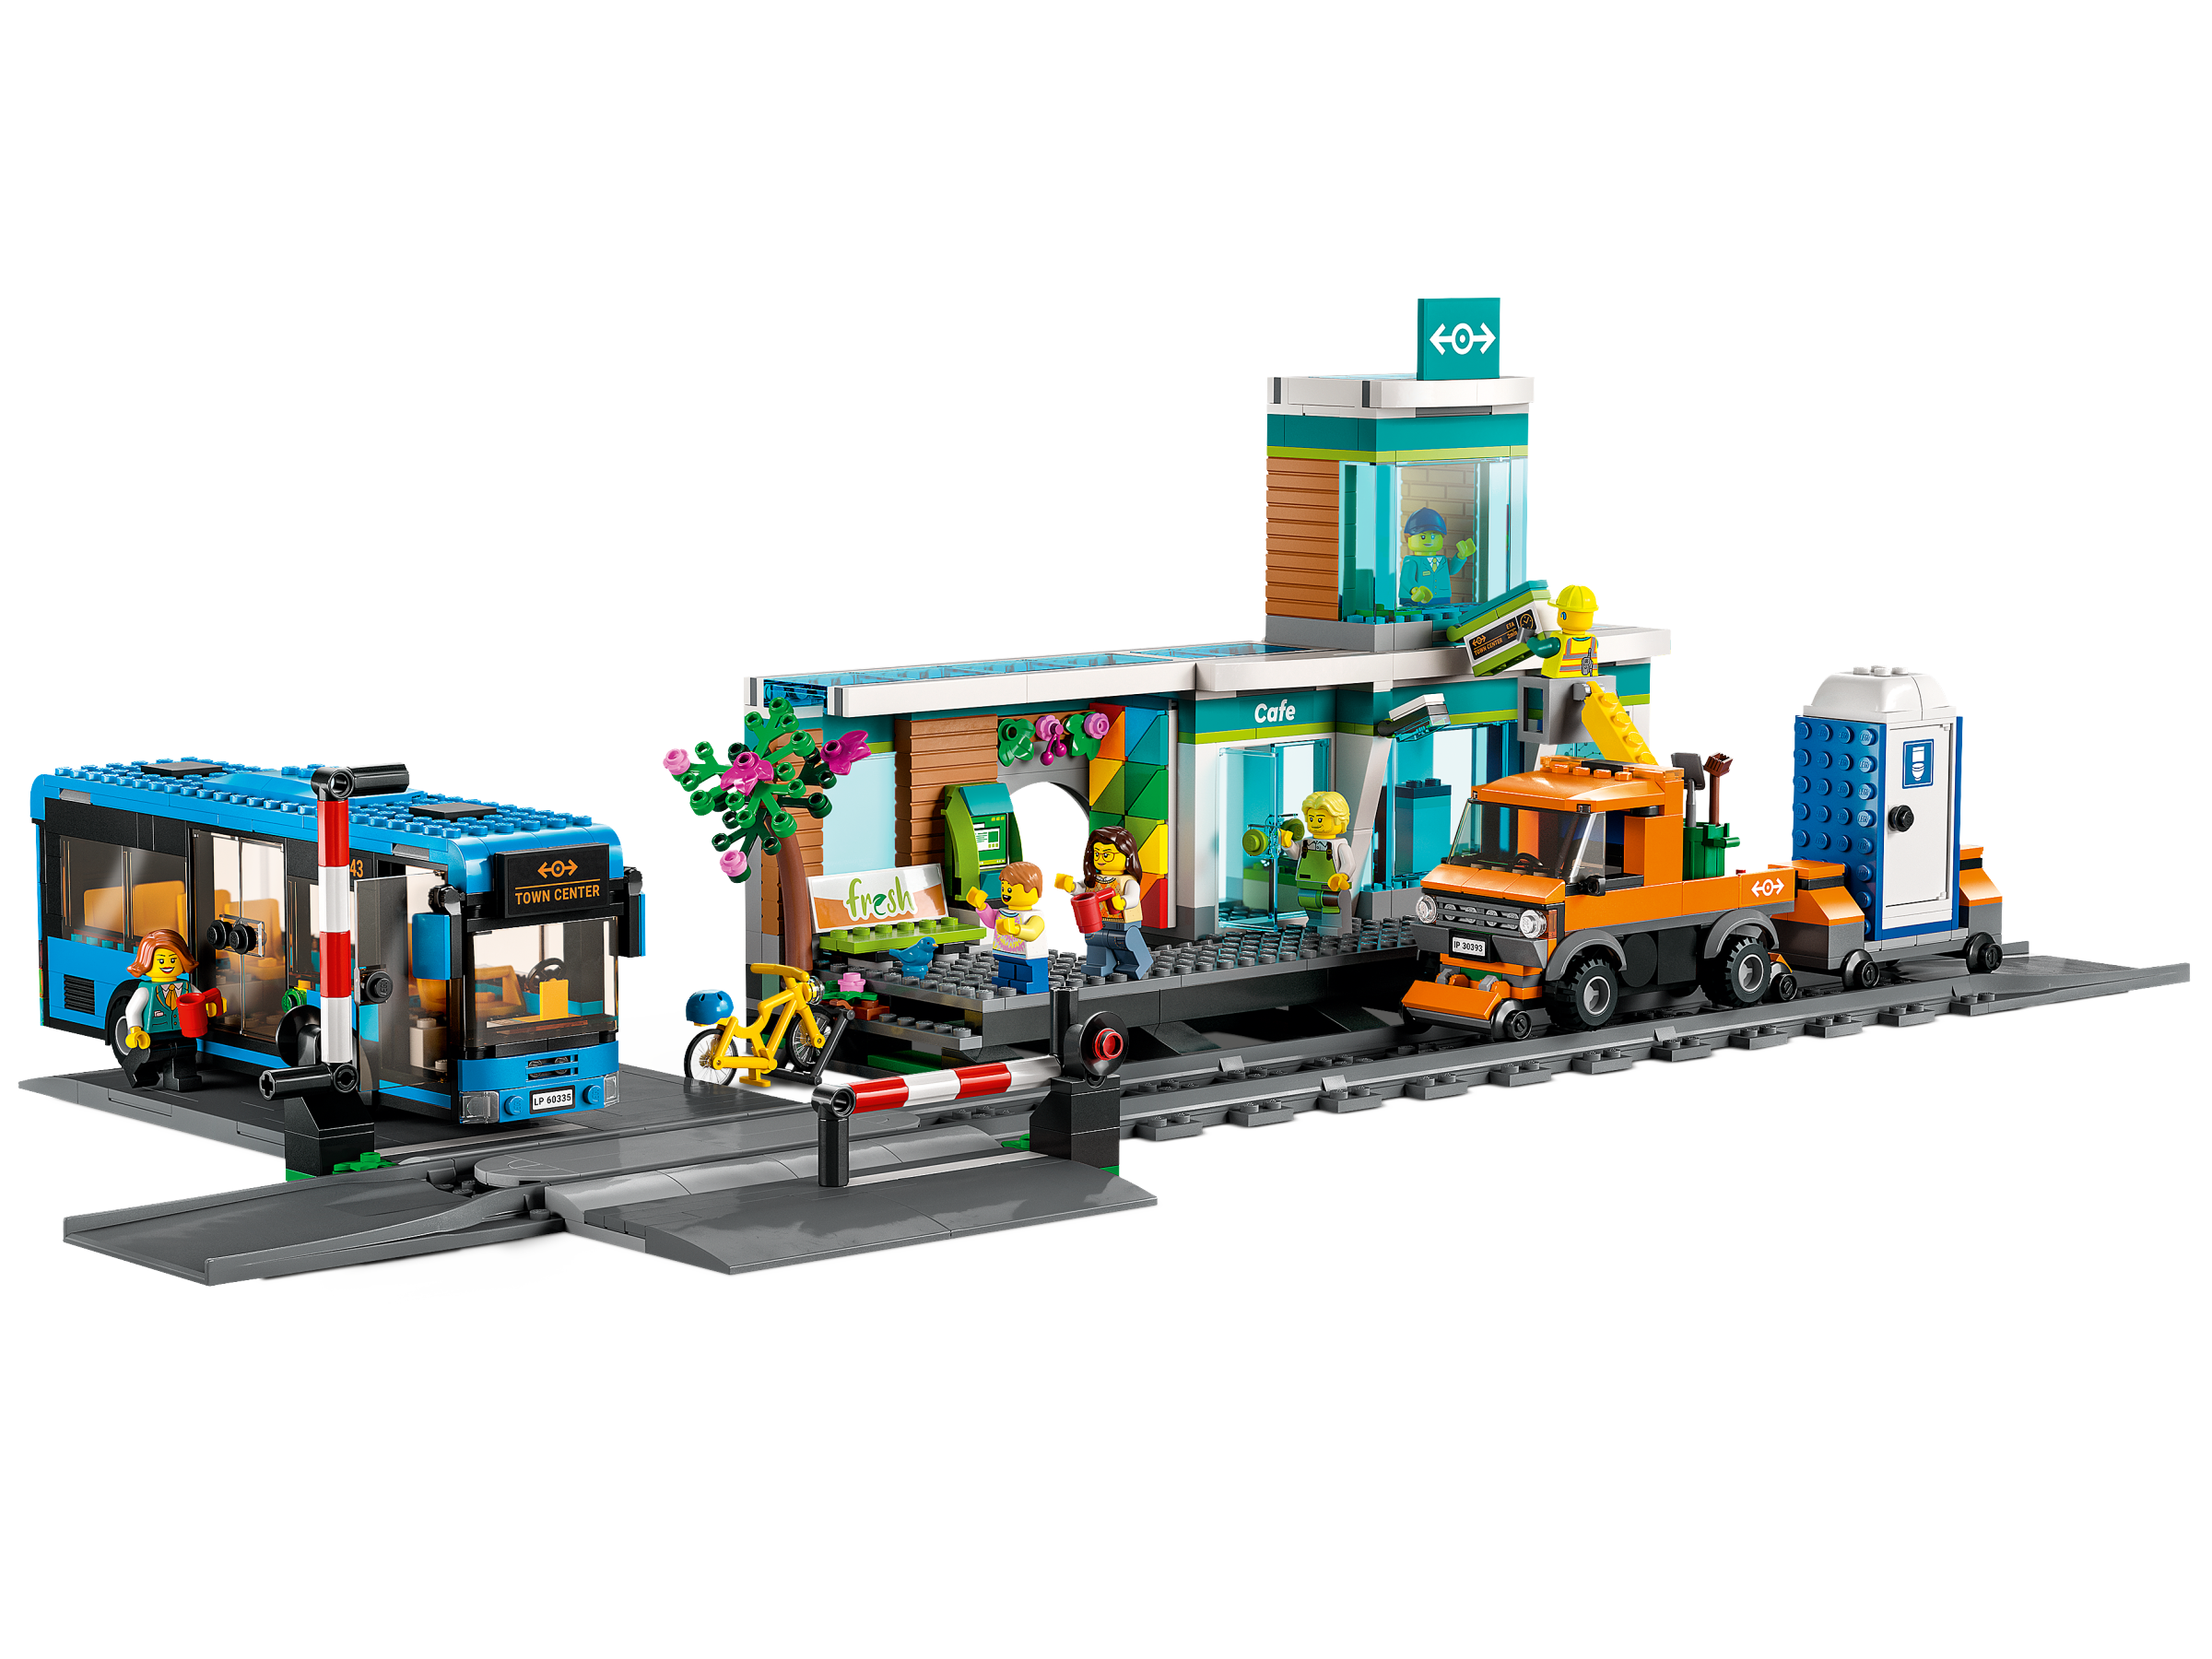 LEGO レゴ シティ 60335 トレインステーション-